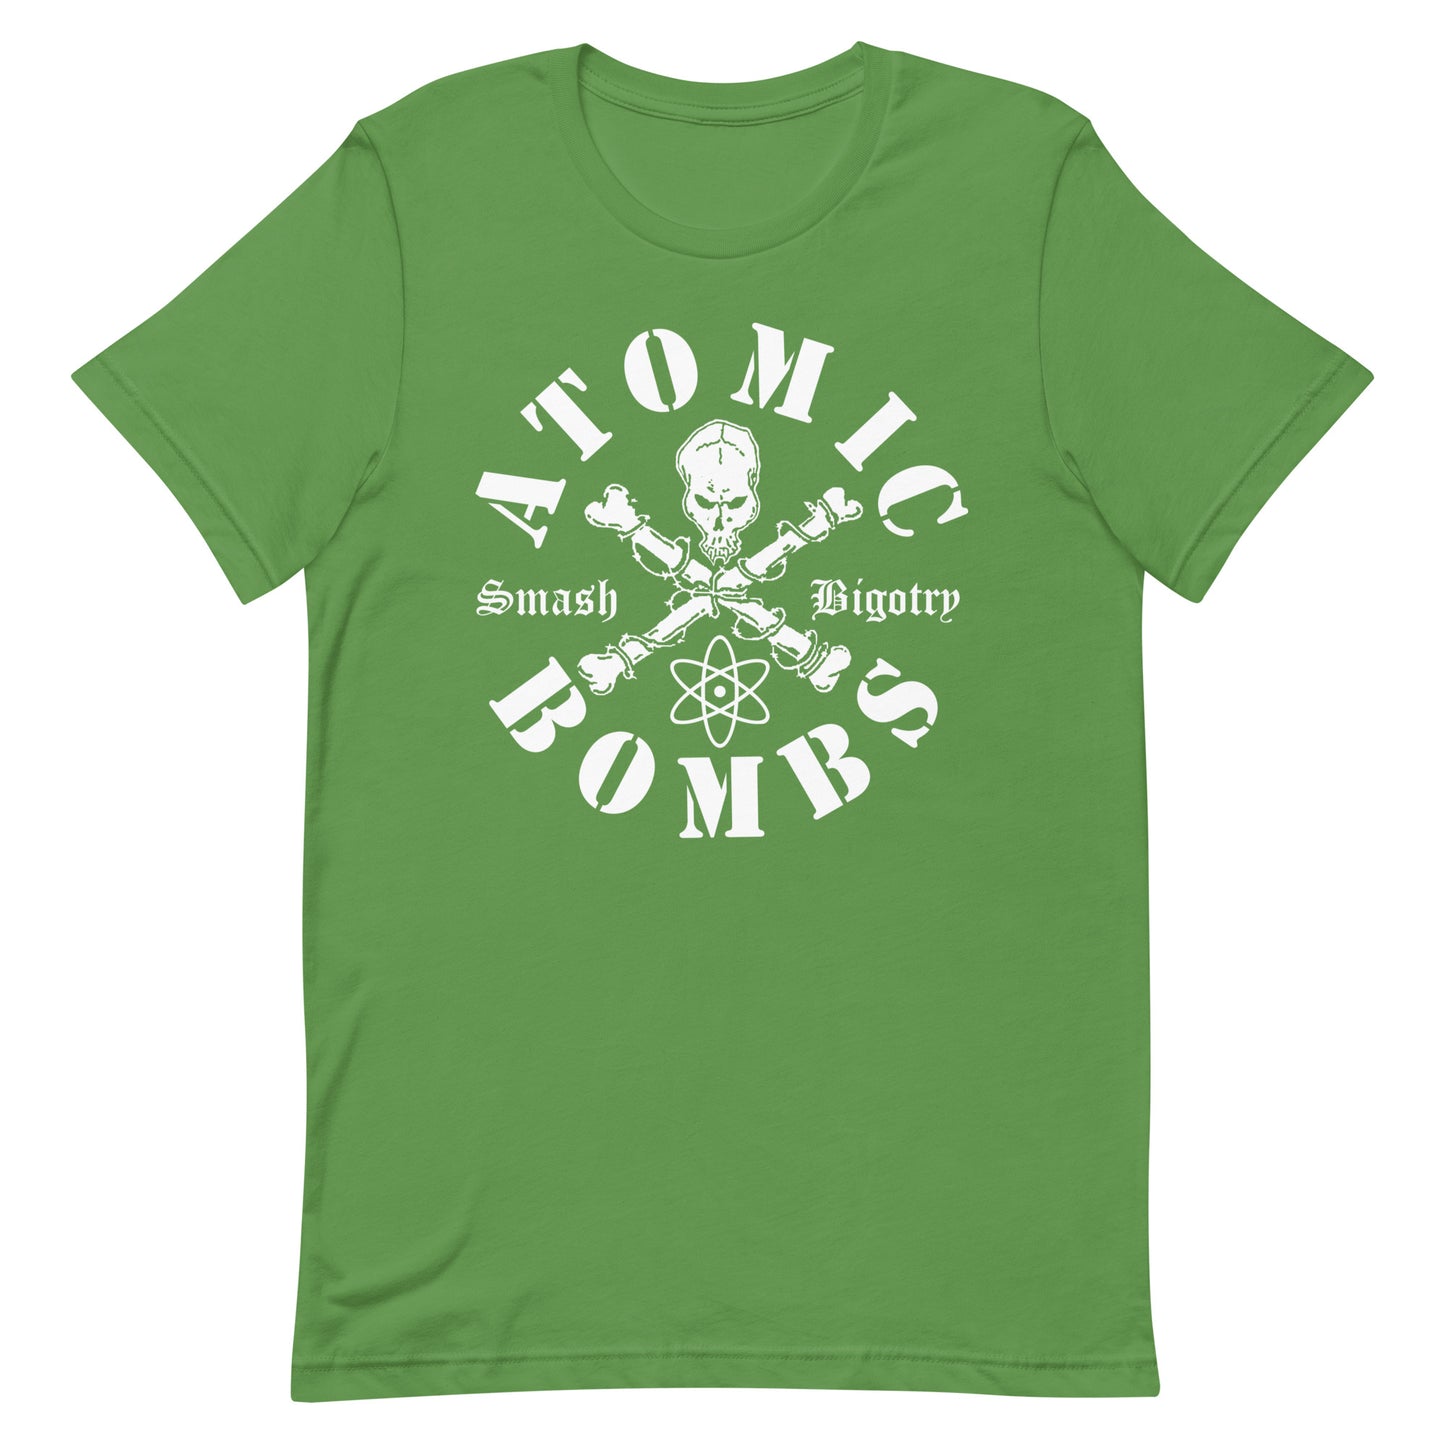 Atomic Bombs - Smash Bigotry T-Shirt